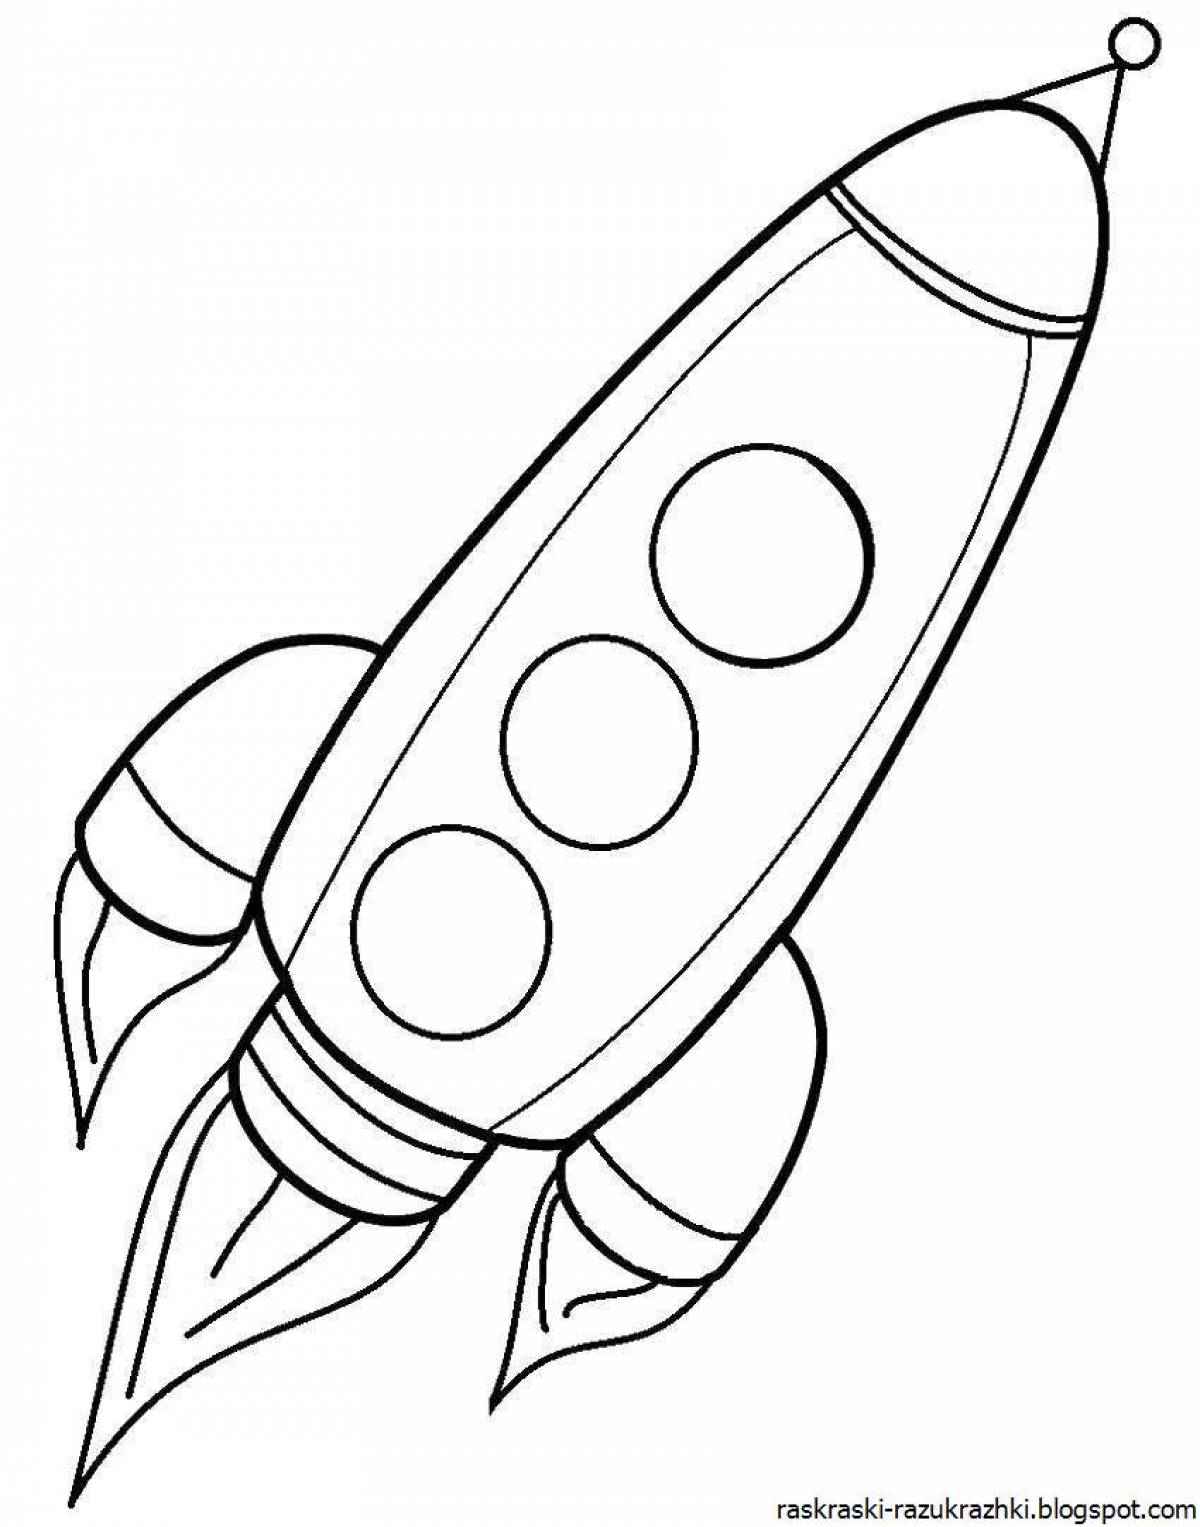 Ракета рисунок для детей 5 лет. Ракета раскраска. Ракета раскраска для детей. Космическая ракета раскраска. Раскраска ракета в космосе для детей.